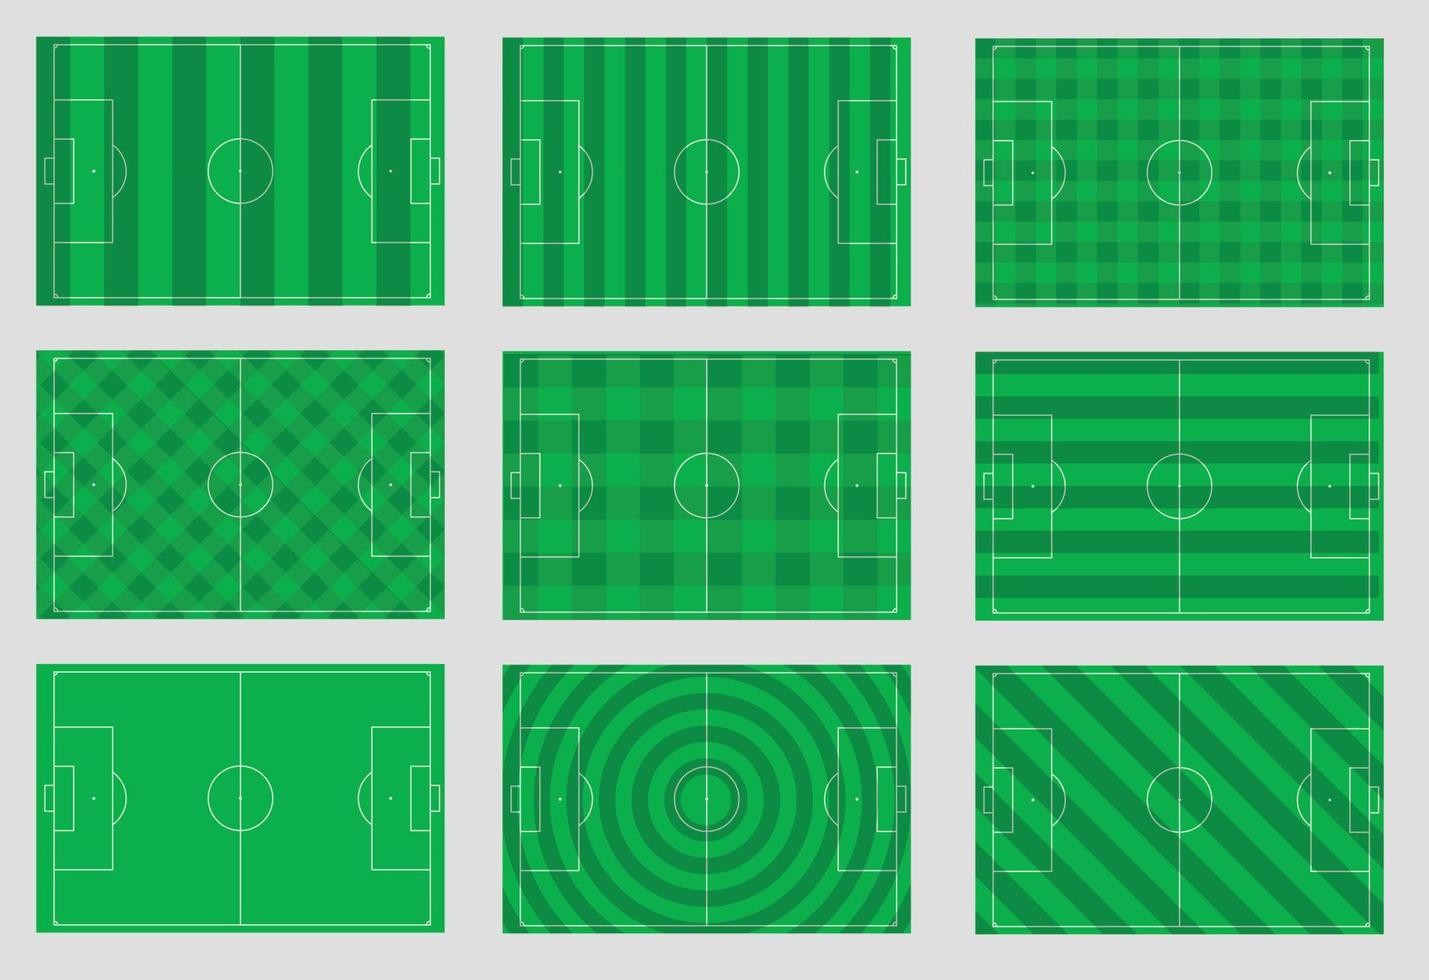 Ilustración de vector de campos de fútbol